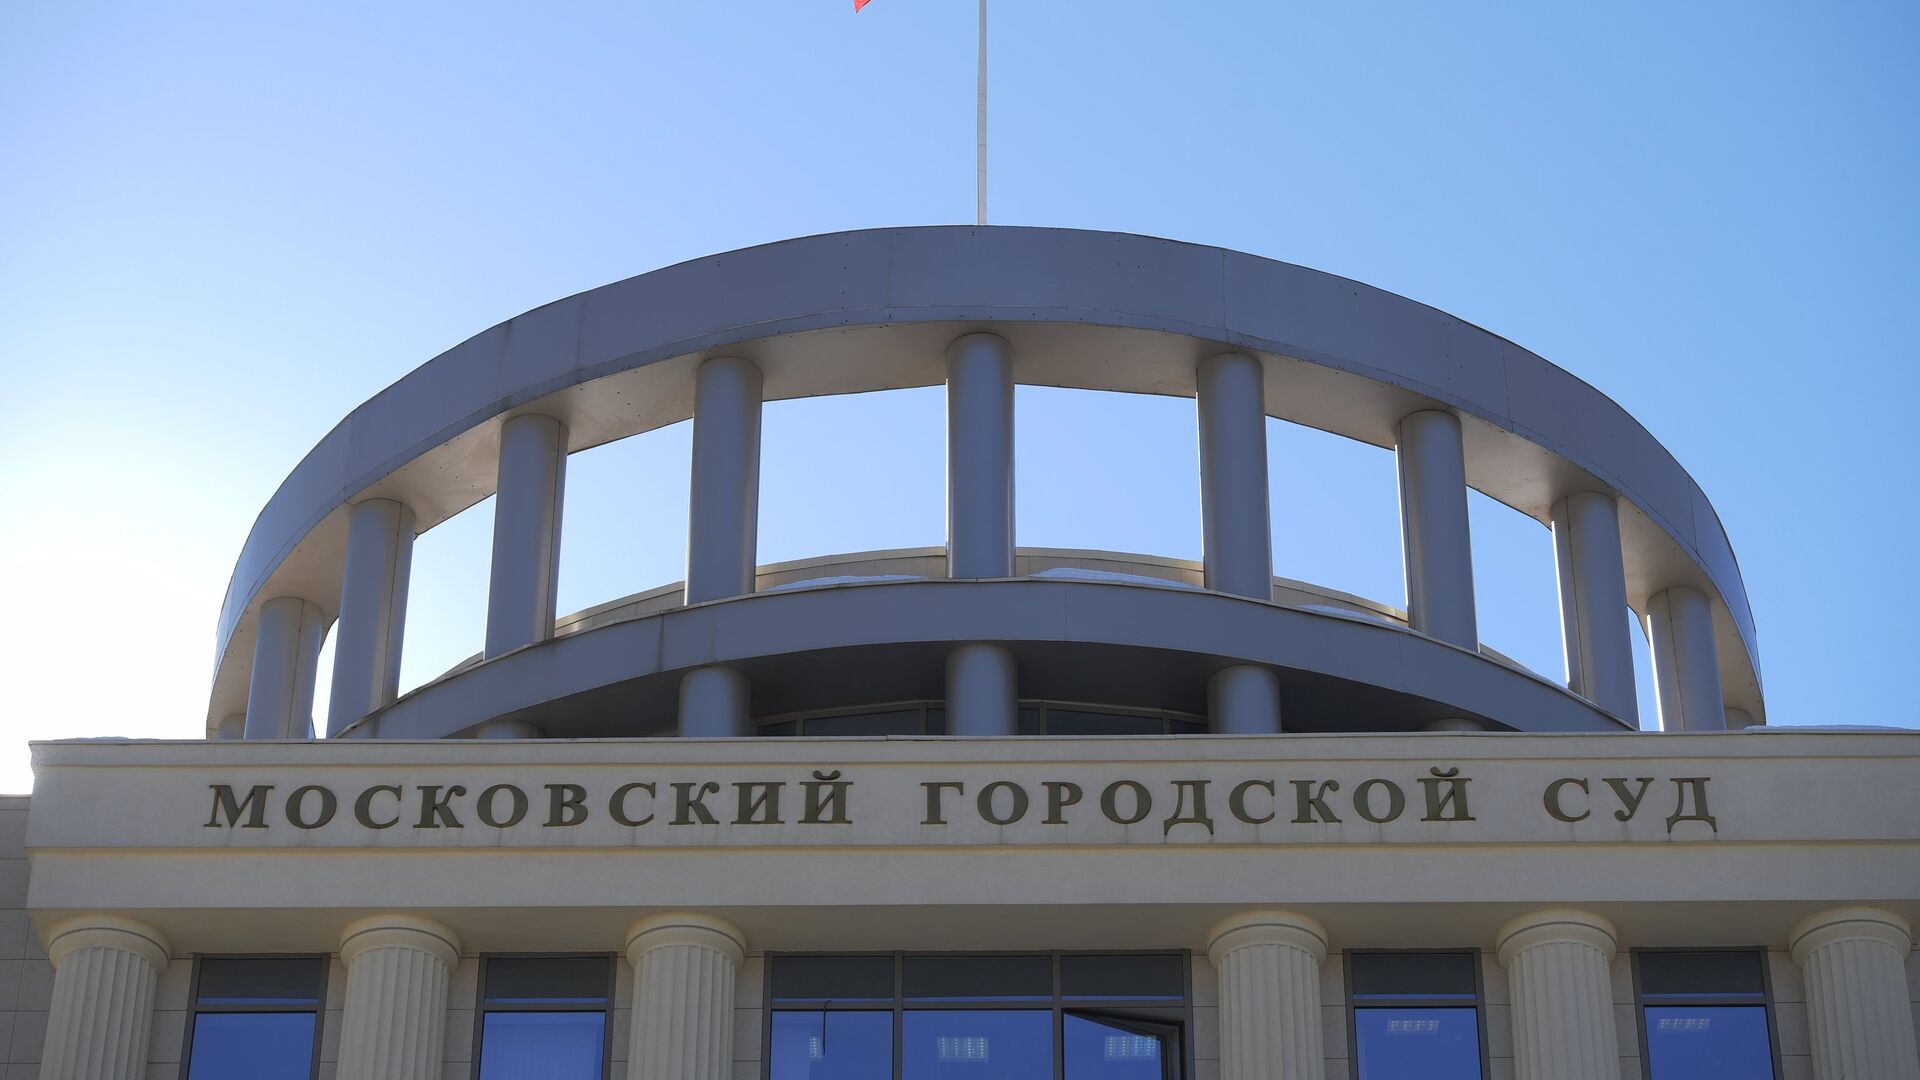 КПРФ подала в Мосгорсуд иск об отмене итогов выборов в 205-м округе